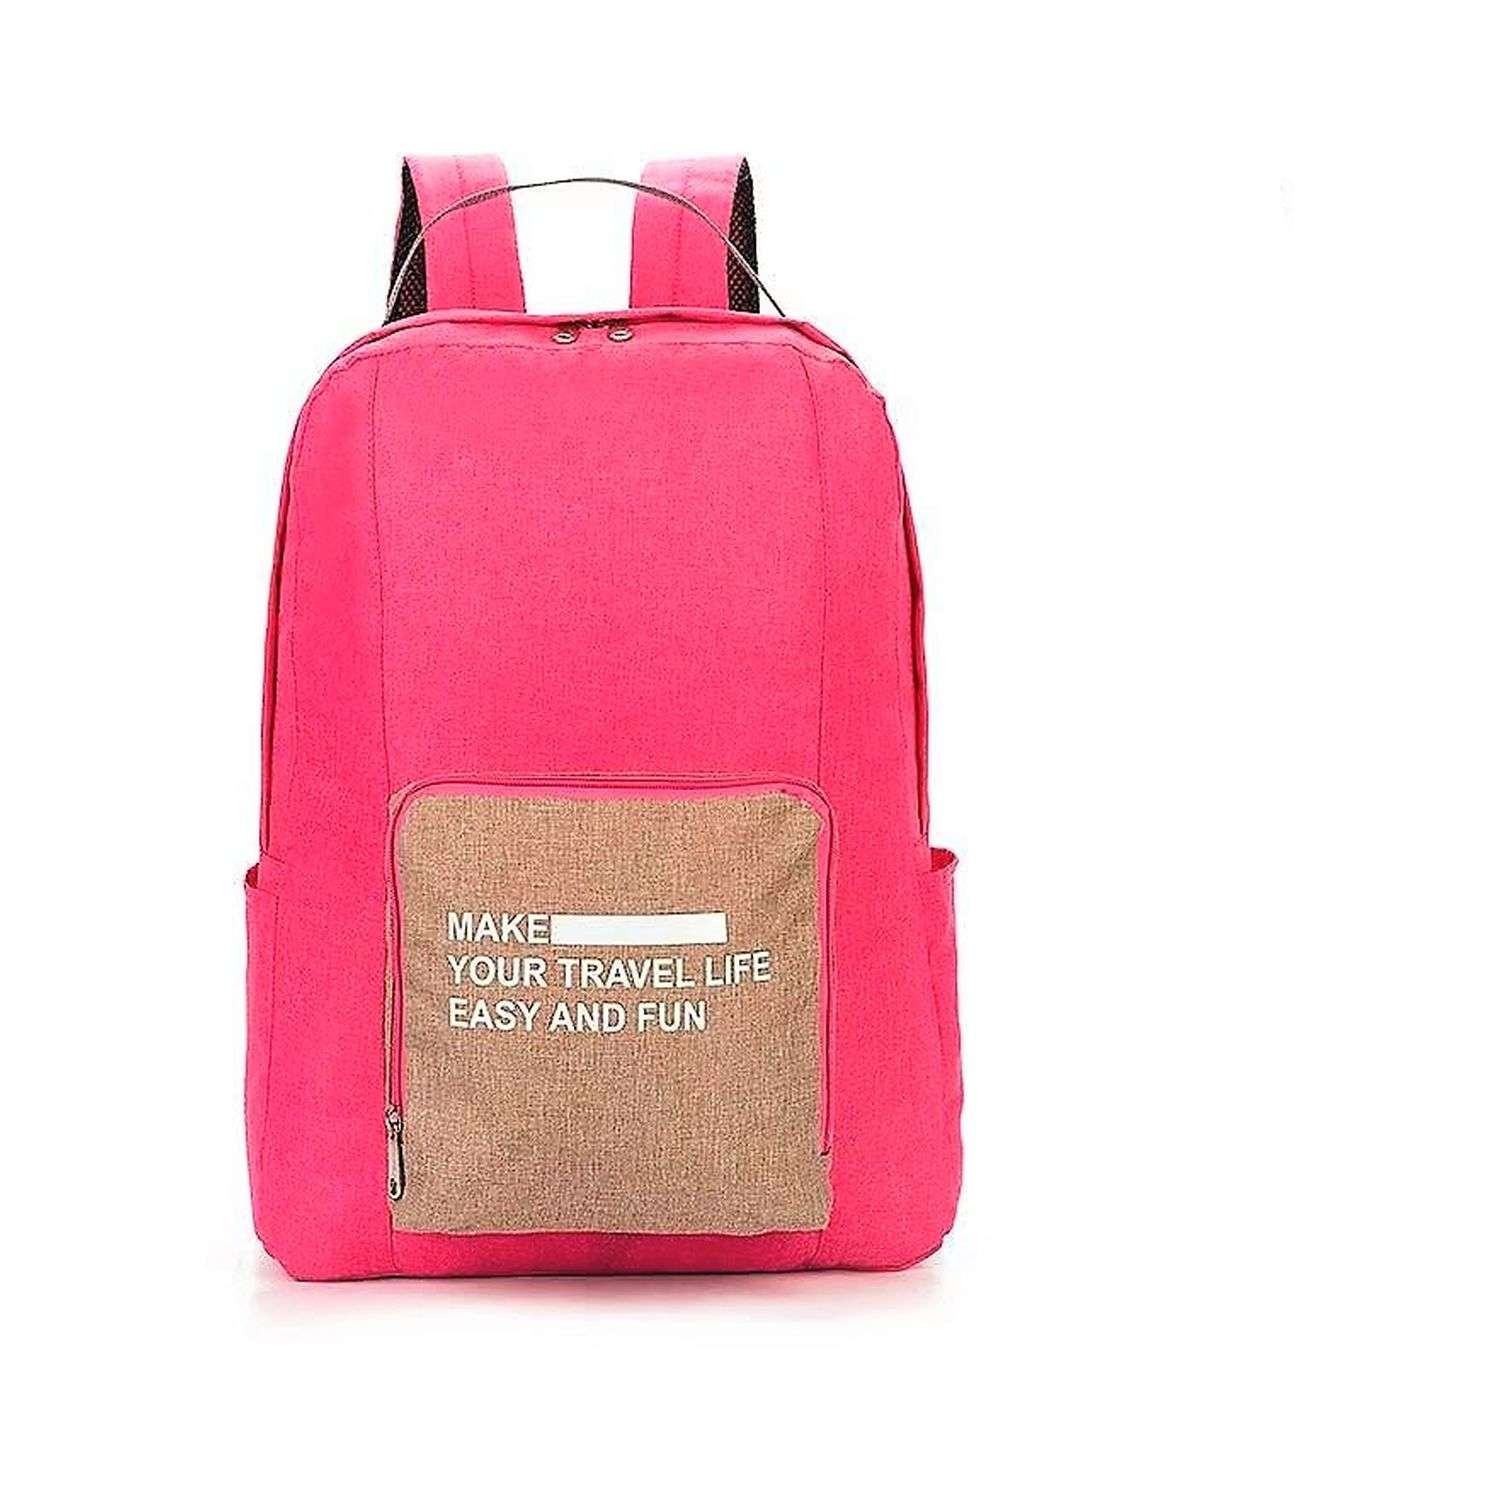 Туристический рюкзак Ripoma Складной розовый - фото 1